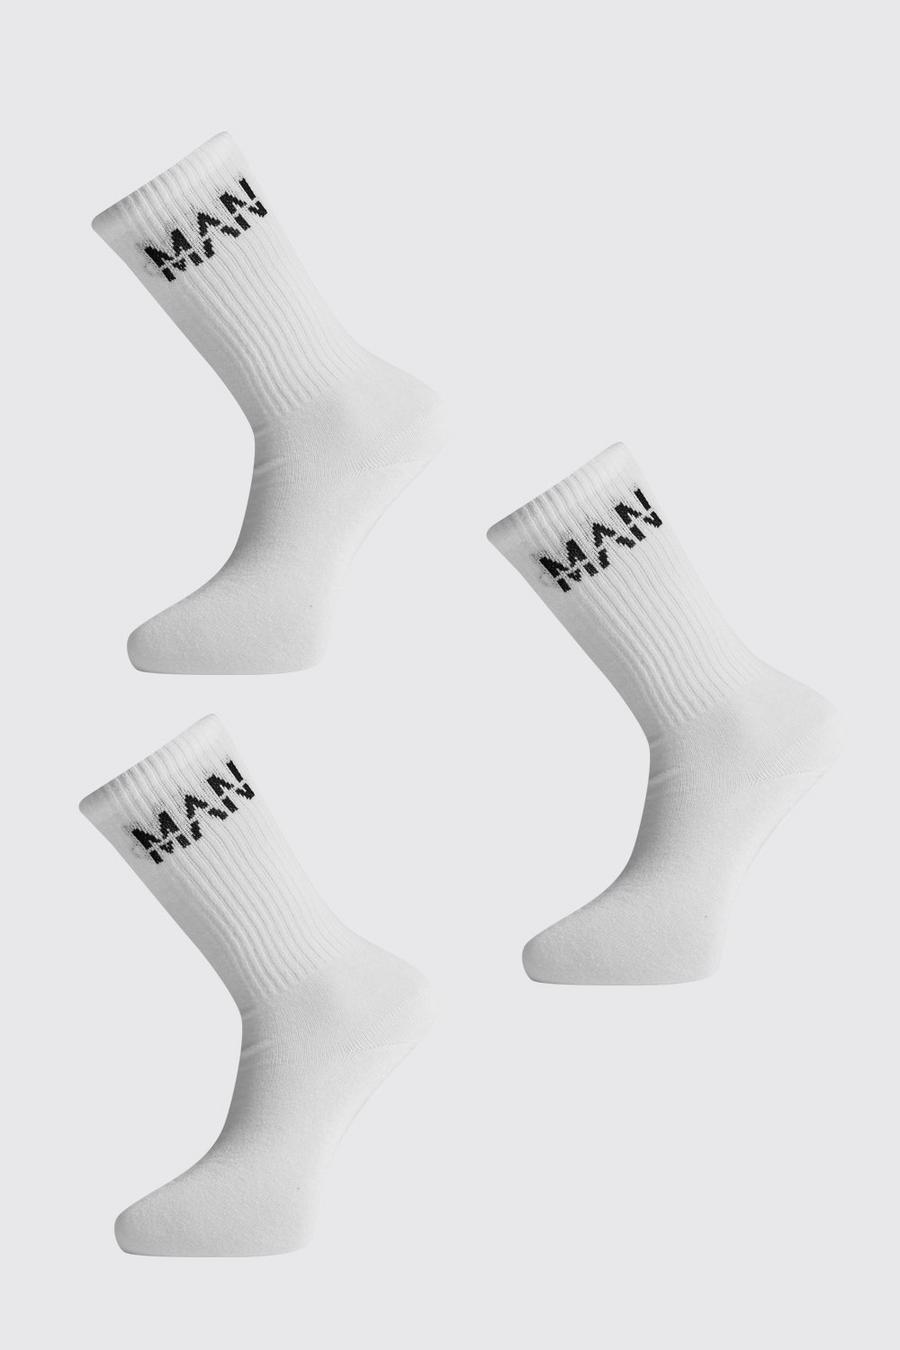 Pack de 3 calcetines deportivos acanalados con logo “MAN” tachado image number 1